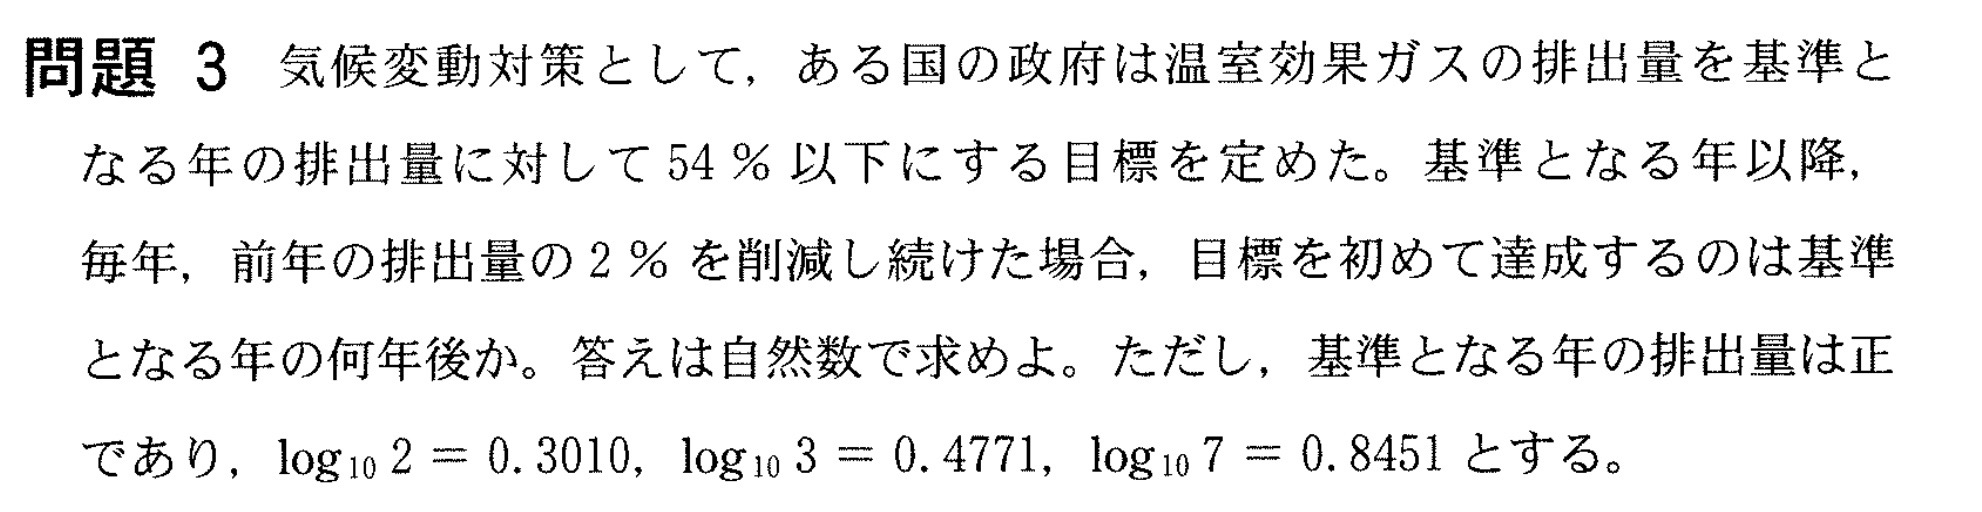 高崎経済大学入試文系数学2022年(令和4年)過去問題